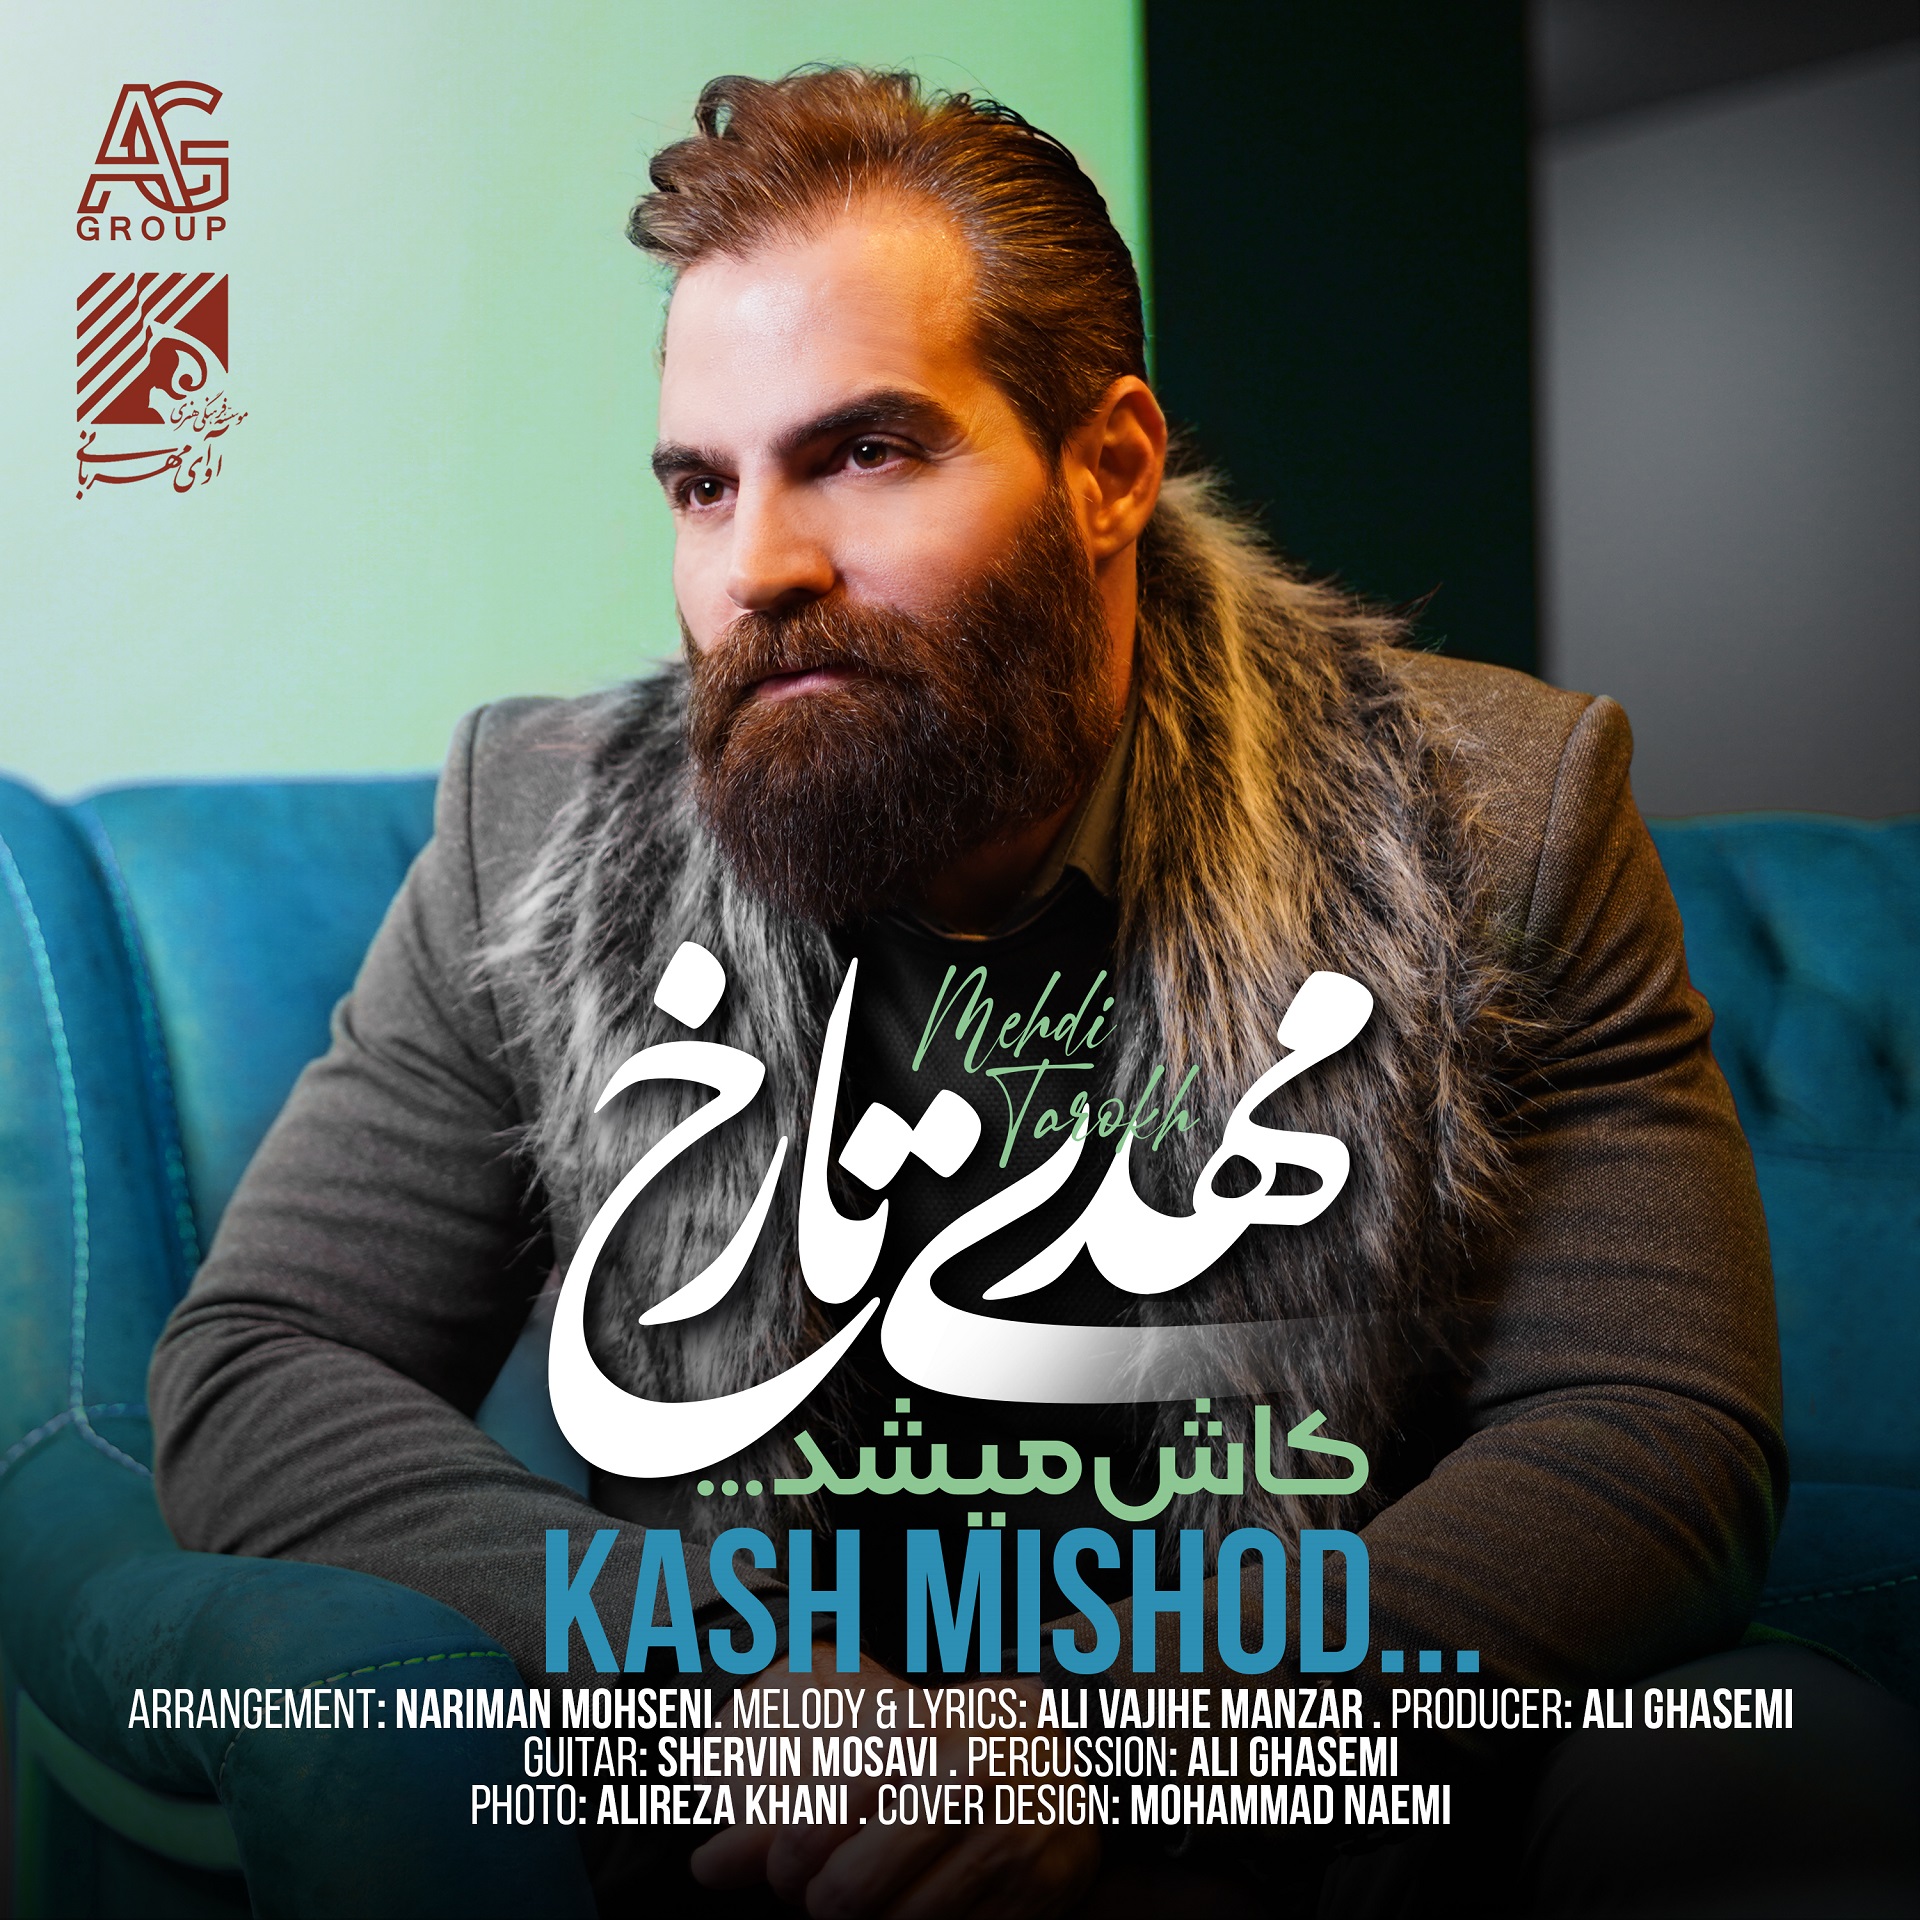  دانلود آهنگ جدید مهدی تارخ - کاش میشد | Download New Music By Mehdi Tarokh - Kash Mishod